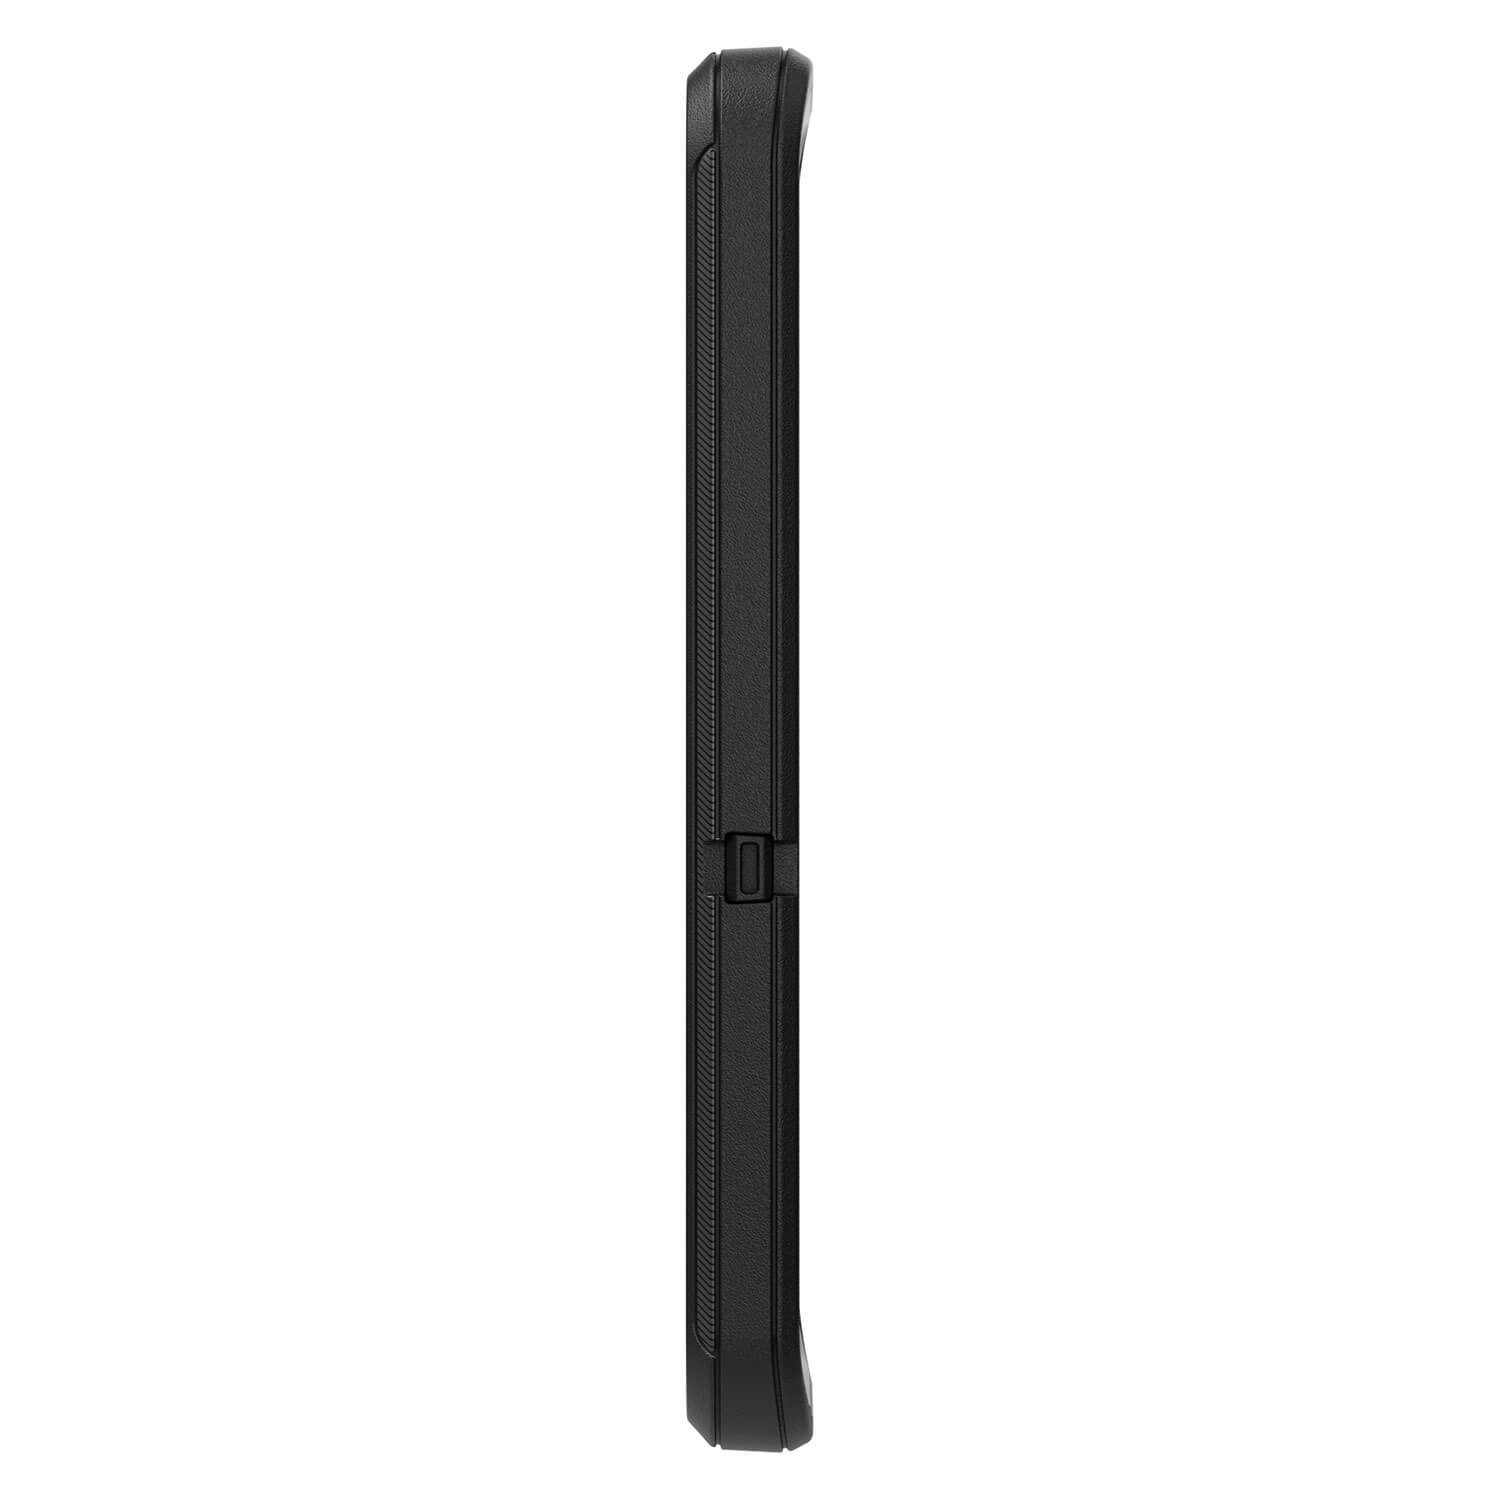 OtterBox Samsung Galaxy S22 5G Case Defender Black